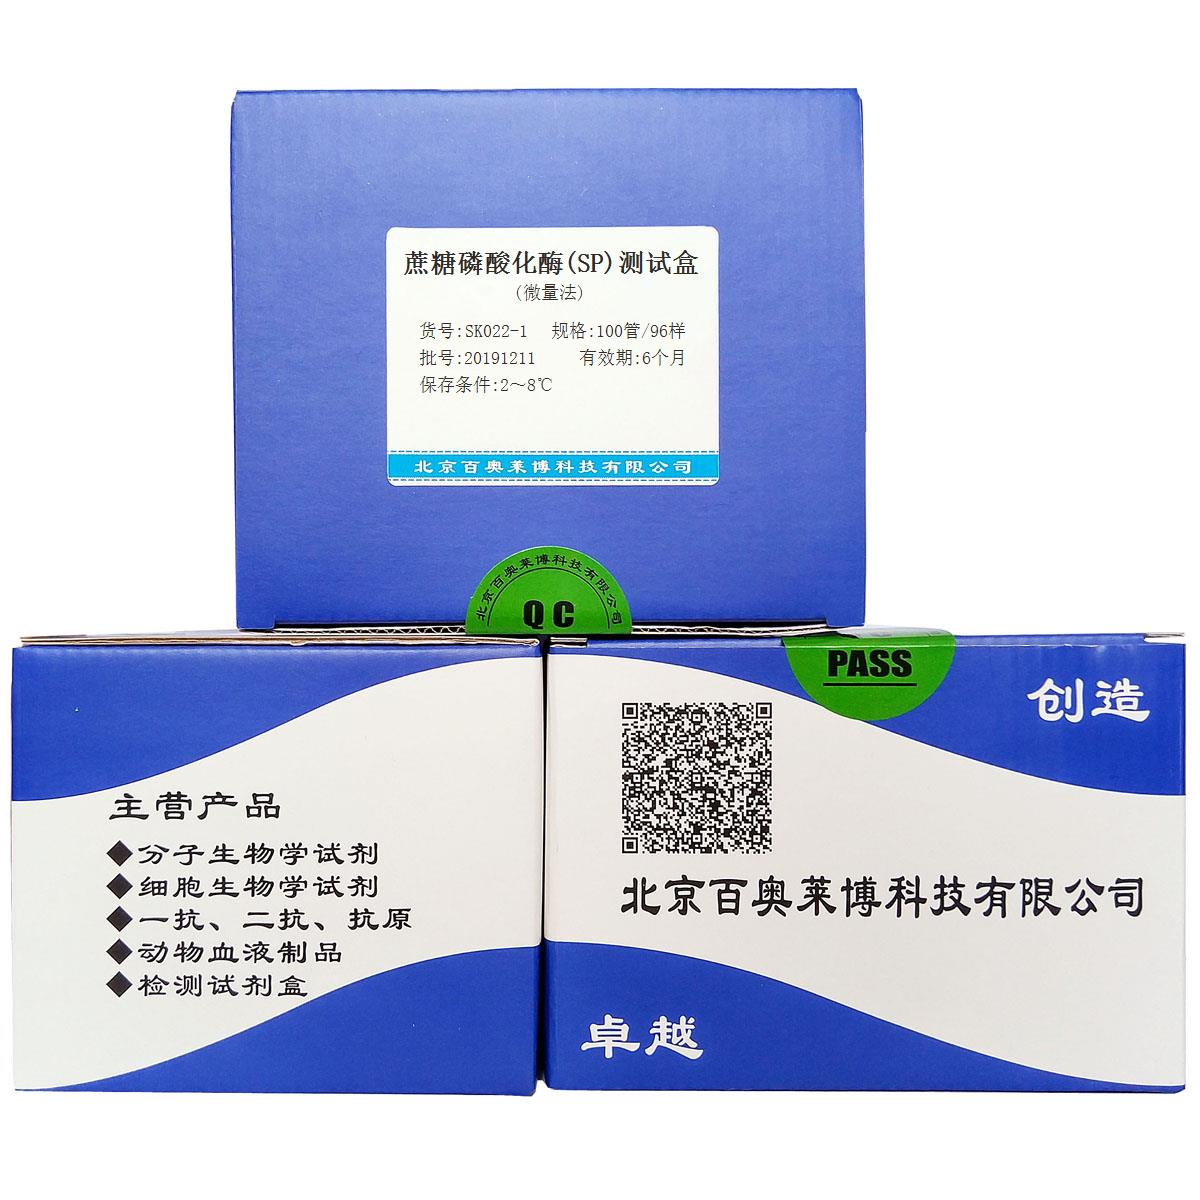 蔗糖磷酸化酶(SP)测试盒(微量法)优惠促销